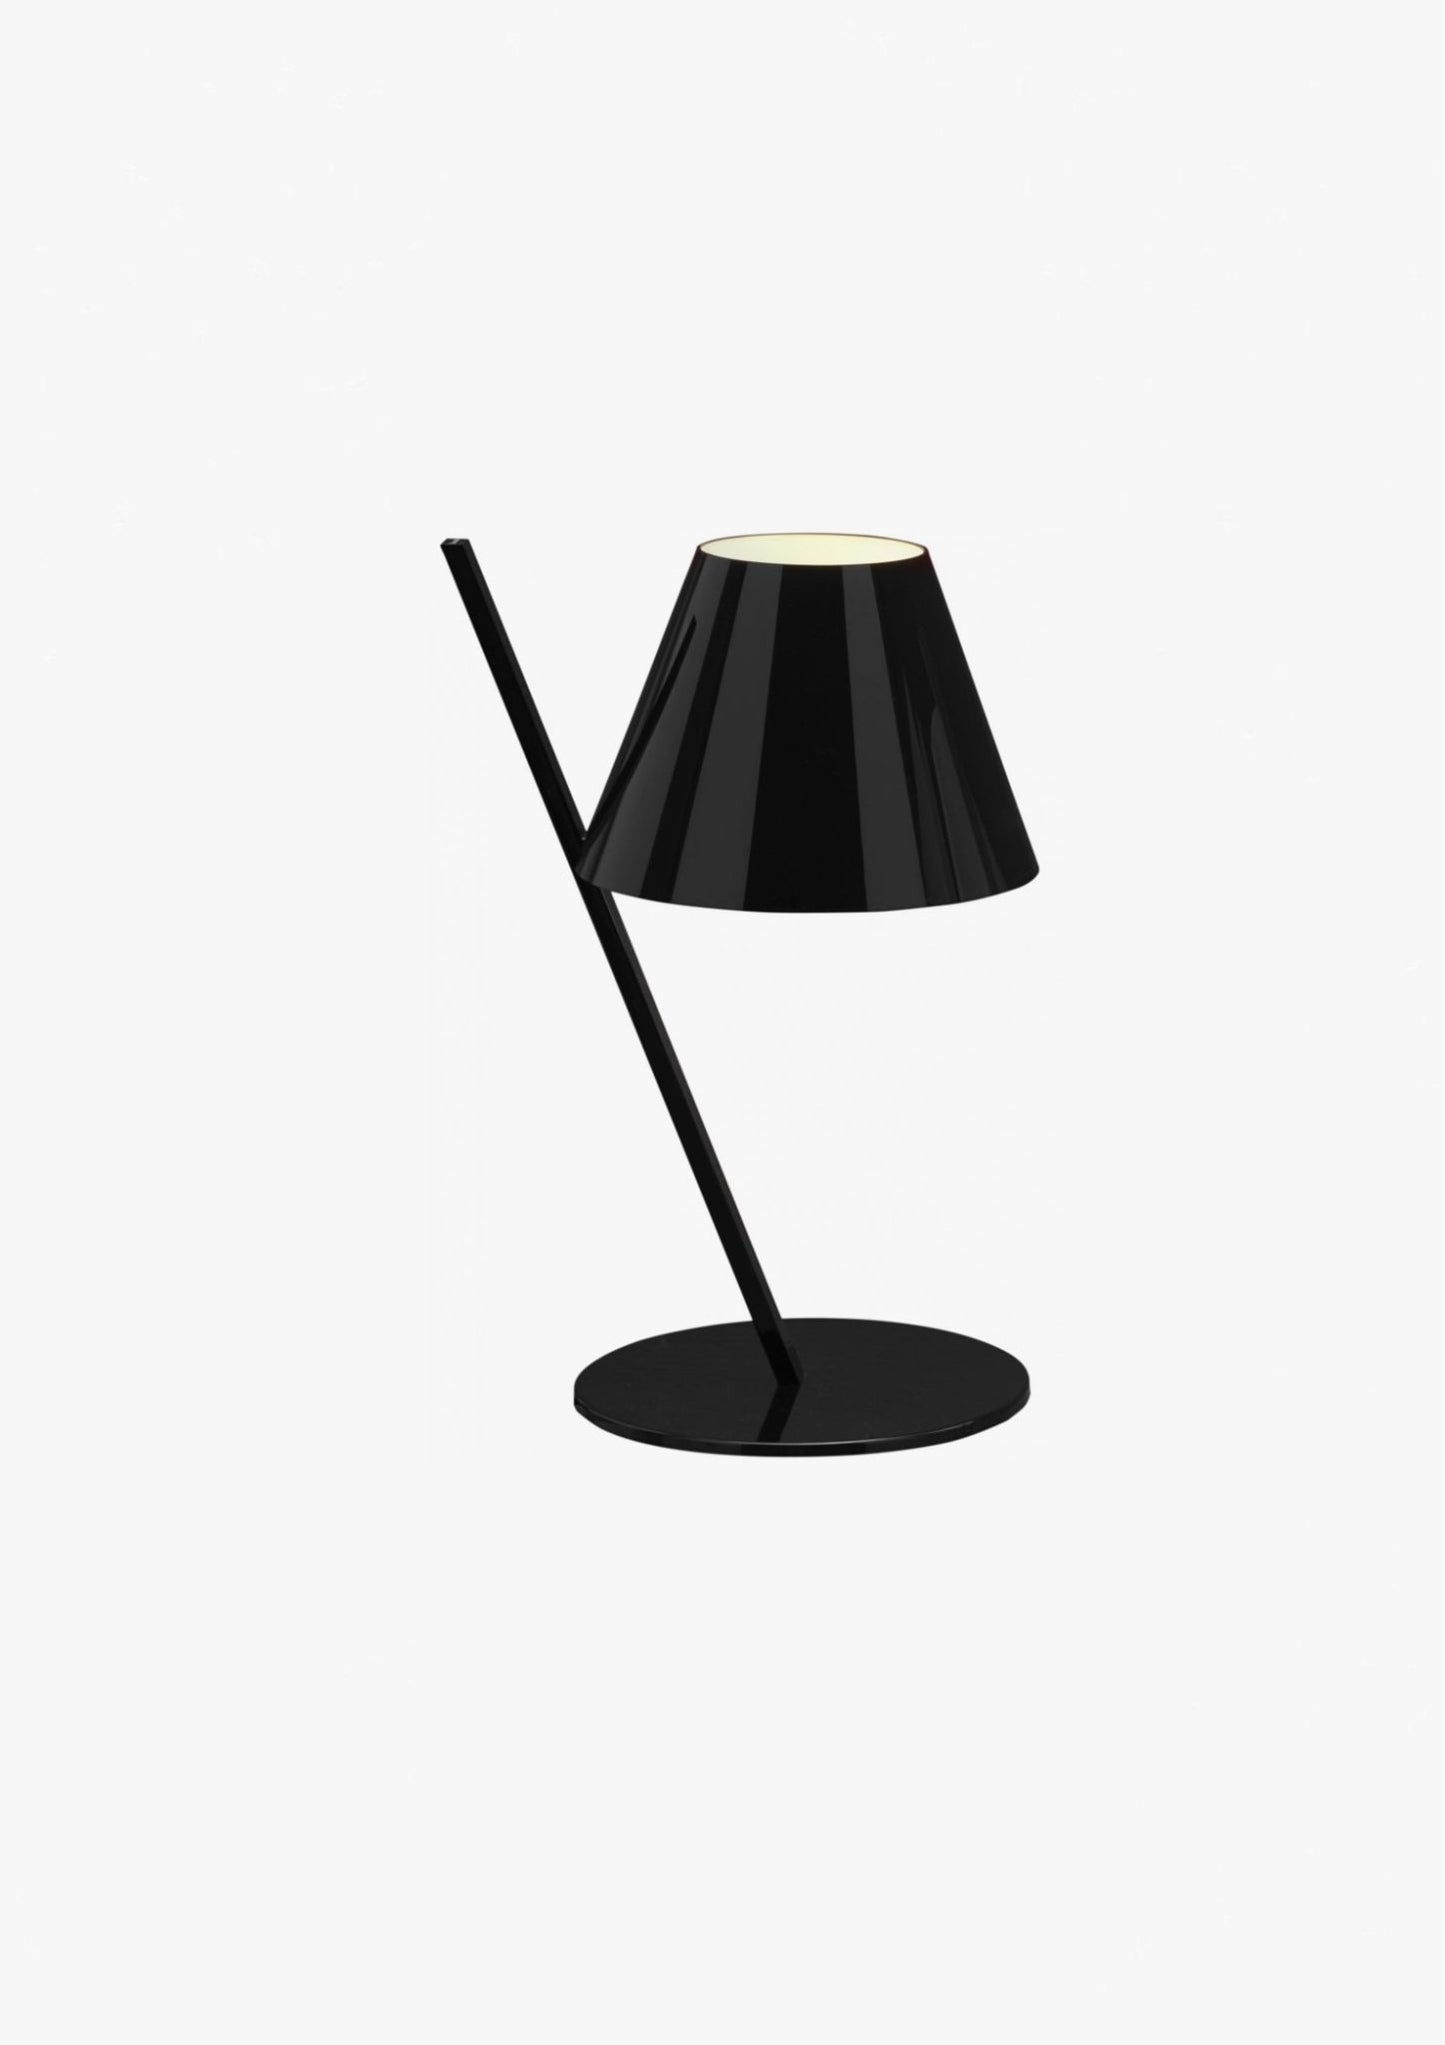 Le Petite - lampada da tavolo - Ceriani Luce